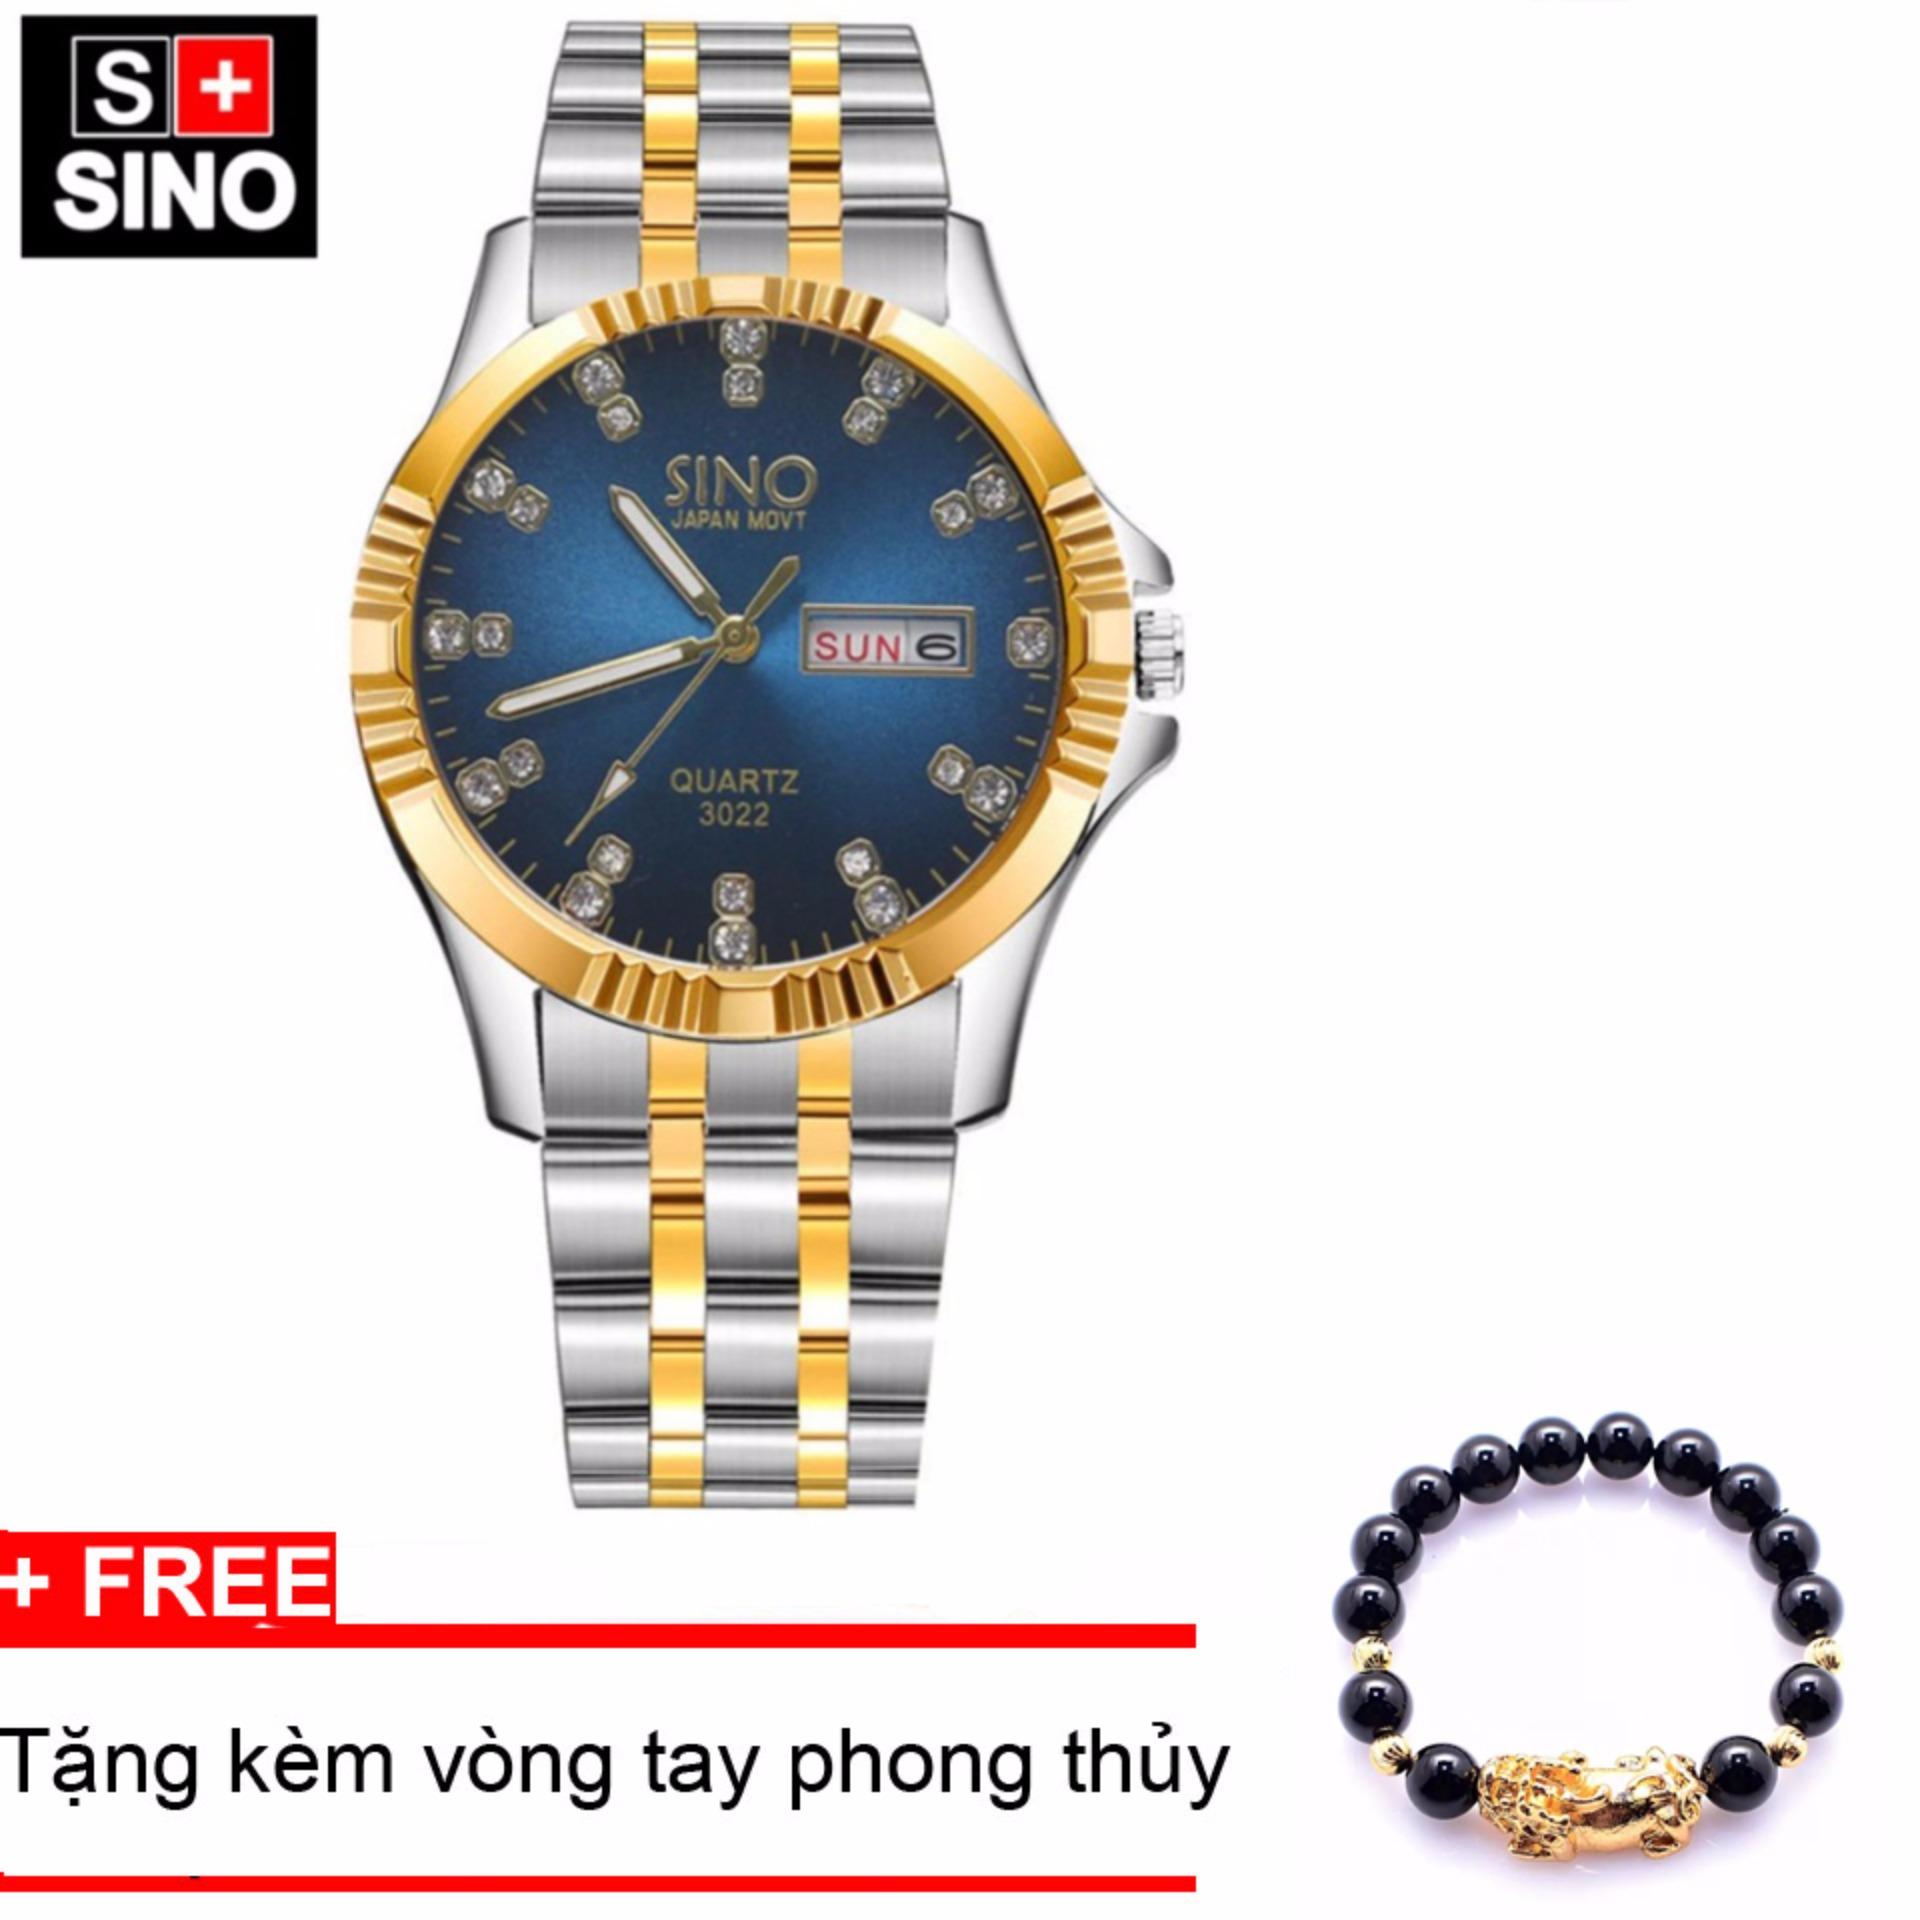 Đồng hồ nam Sino Japan Movt Navy Luxury, tặng vòng tay đá đen TPO-S3022